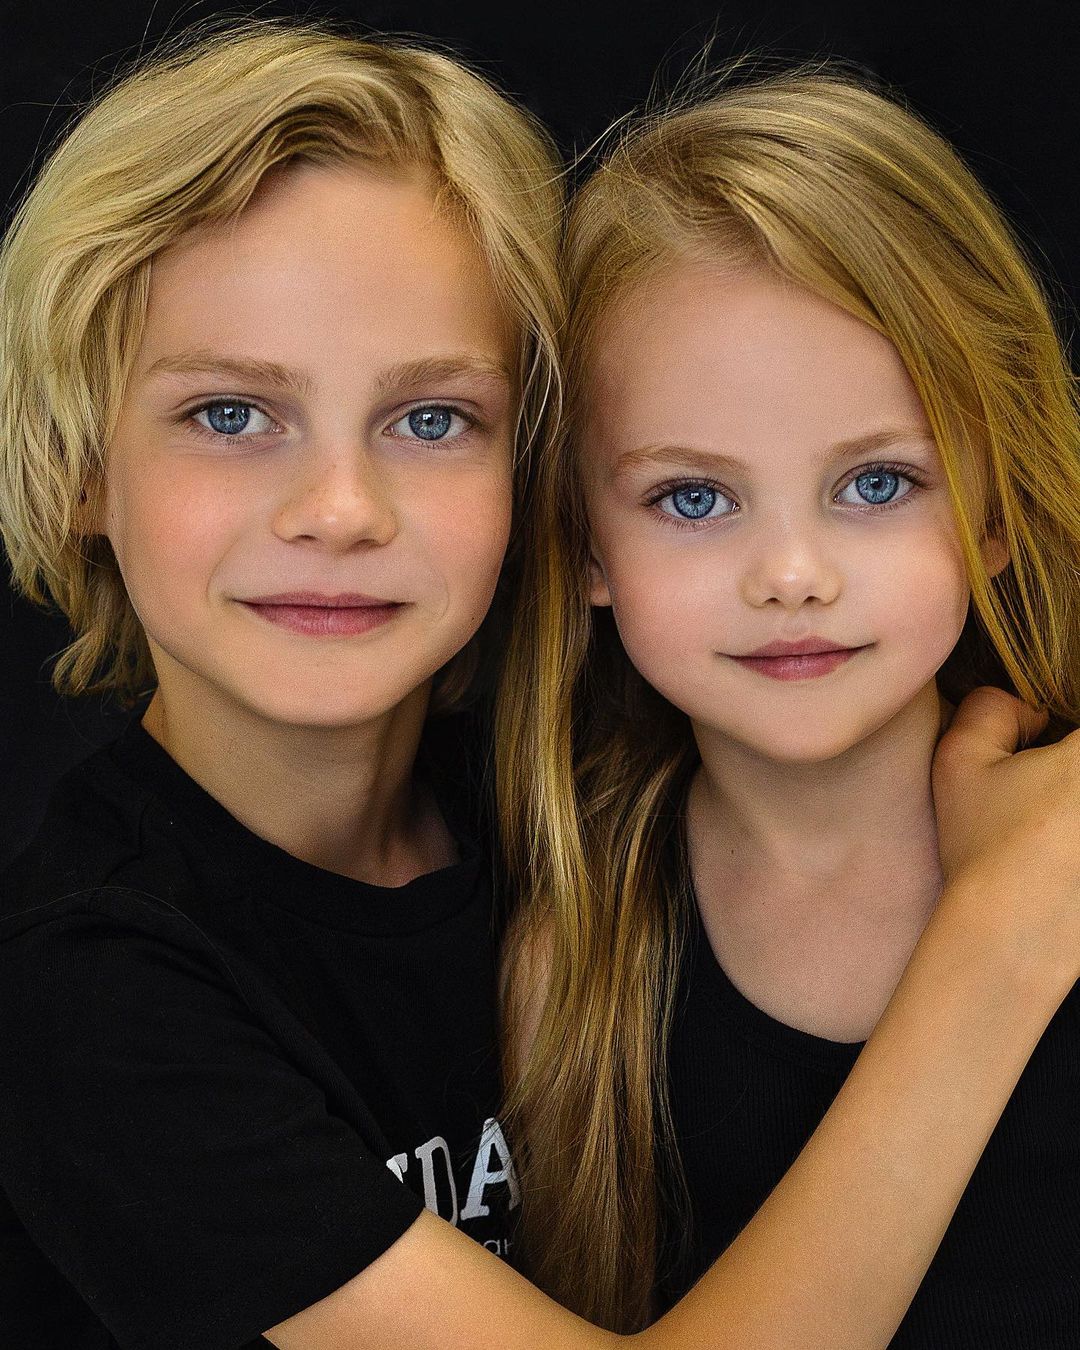 Виола и тейлор. Самые красивые дети. Кра ивые Дефи. Samiy krasivviye deti. Необычные красивые дети.